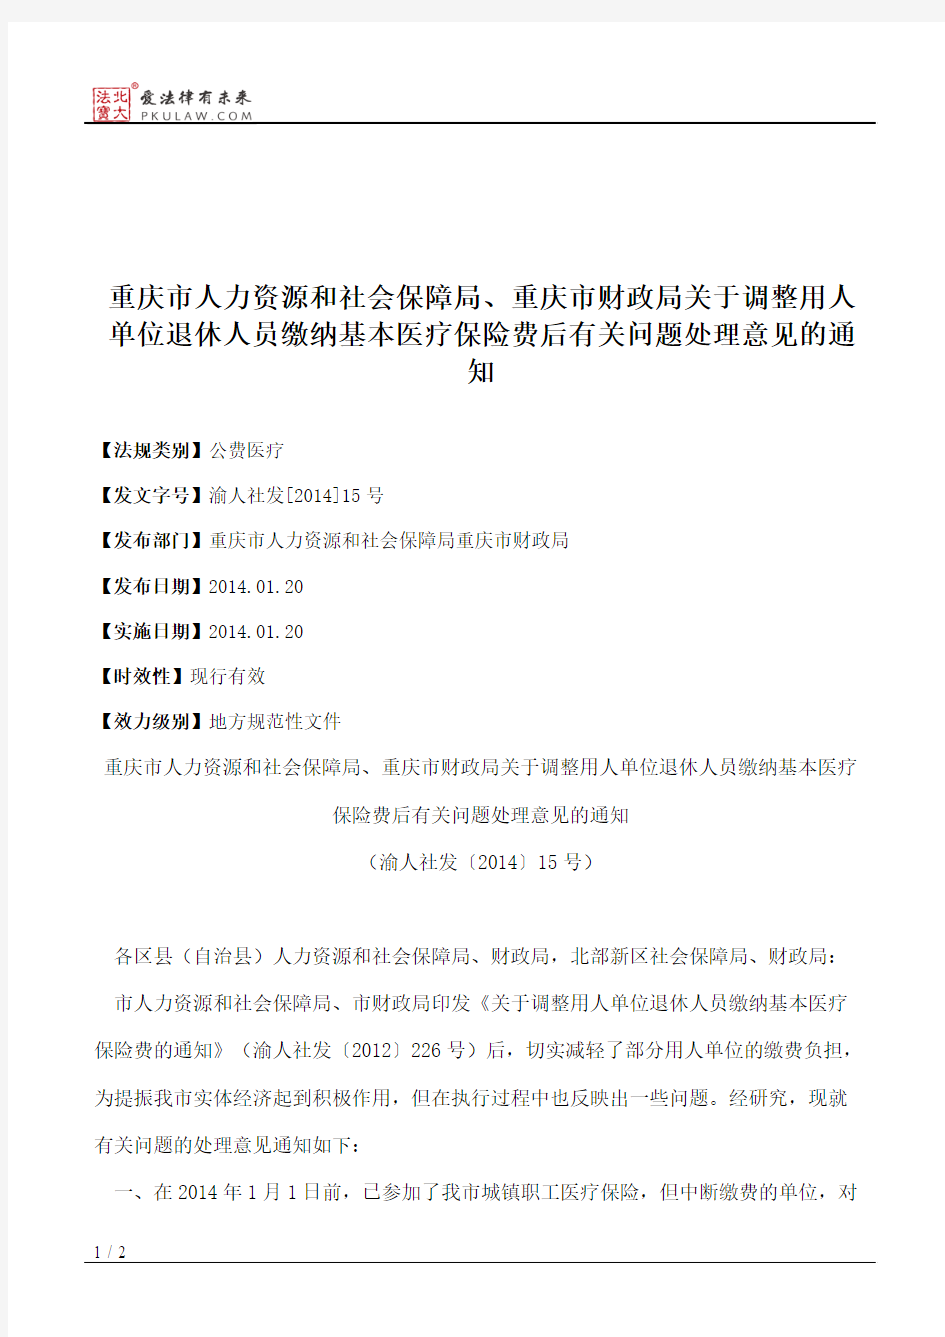 重庆市人力资源和社会保障局、重庆市财政局关于调整用人单位退休